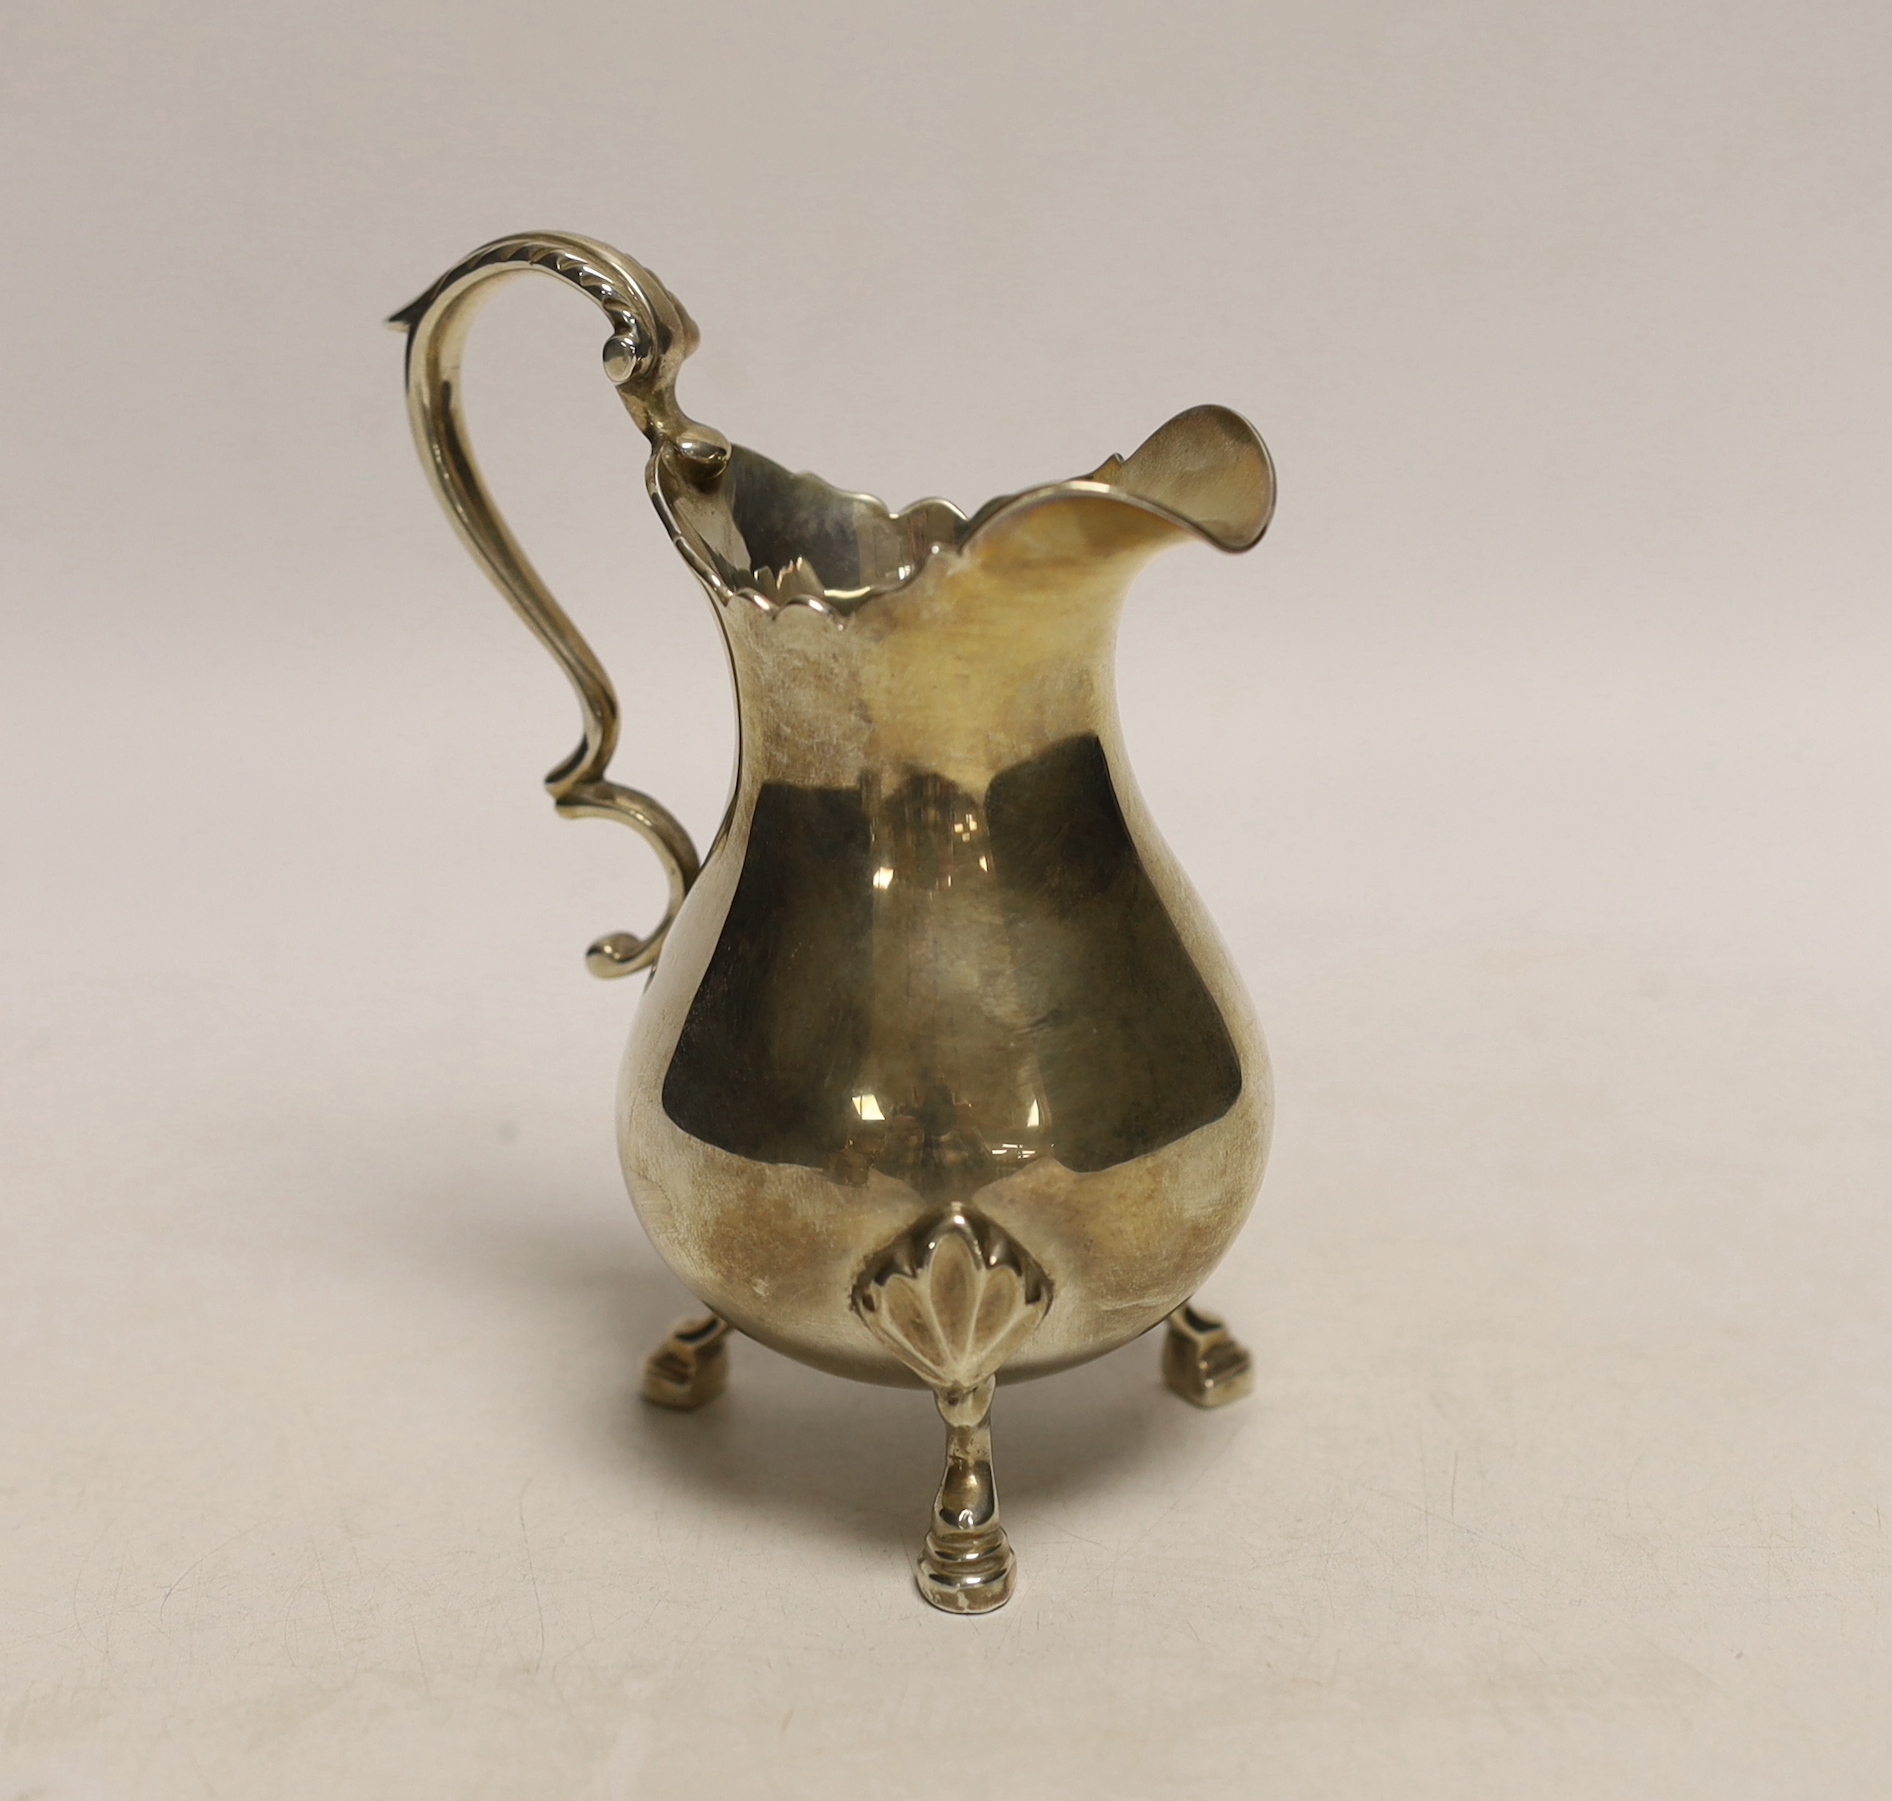 An Elizabeth II silver cream jug, by Rodney Clive Pettit, London, 1992, 6.5 oz.